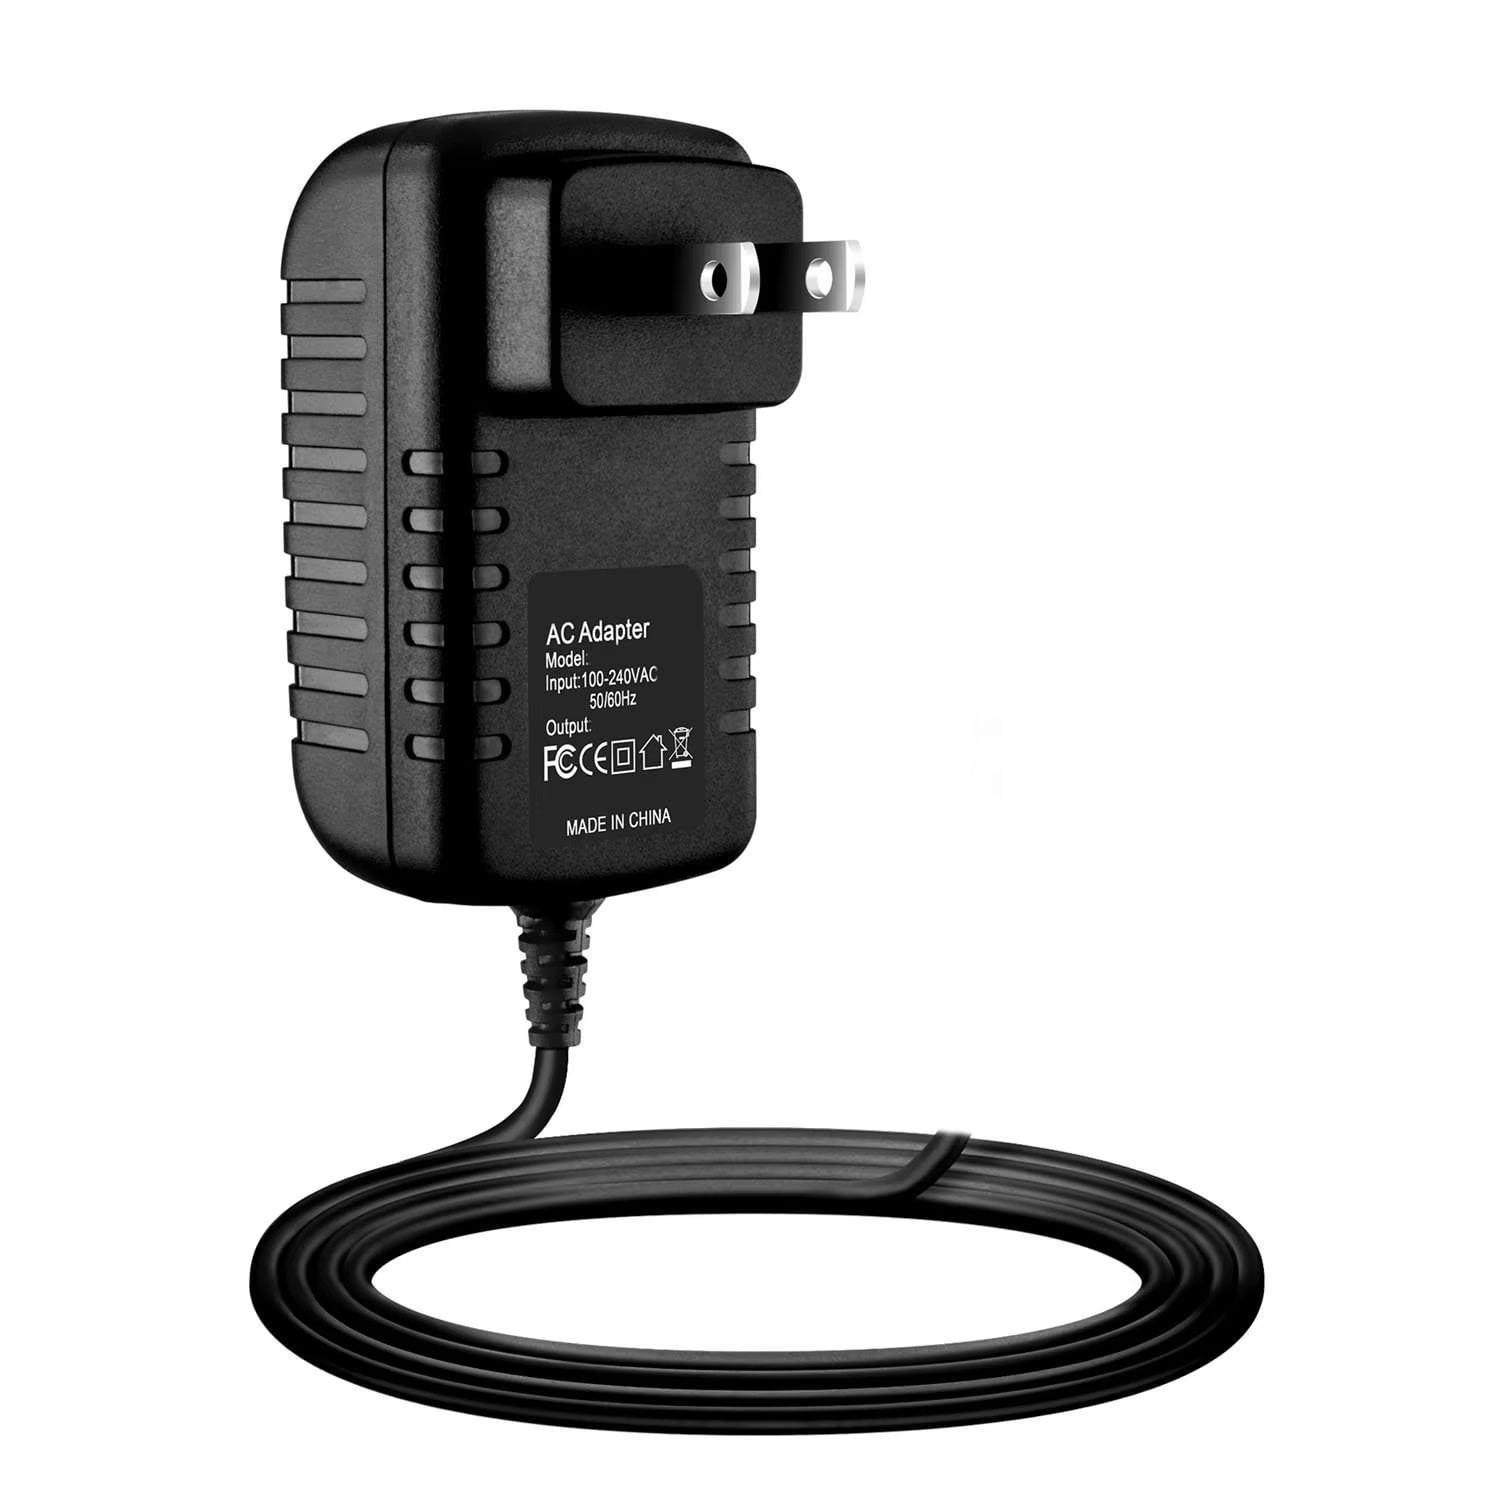 AC DC Adapter Power Charger For SoundLink Color #415859 BT Speaker 